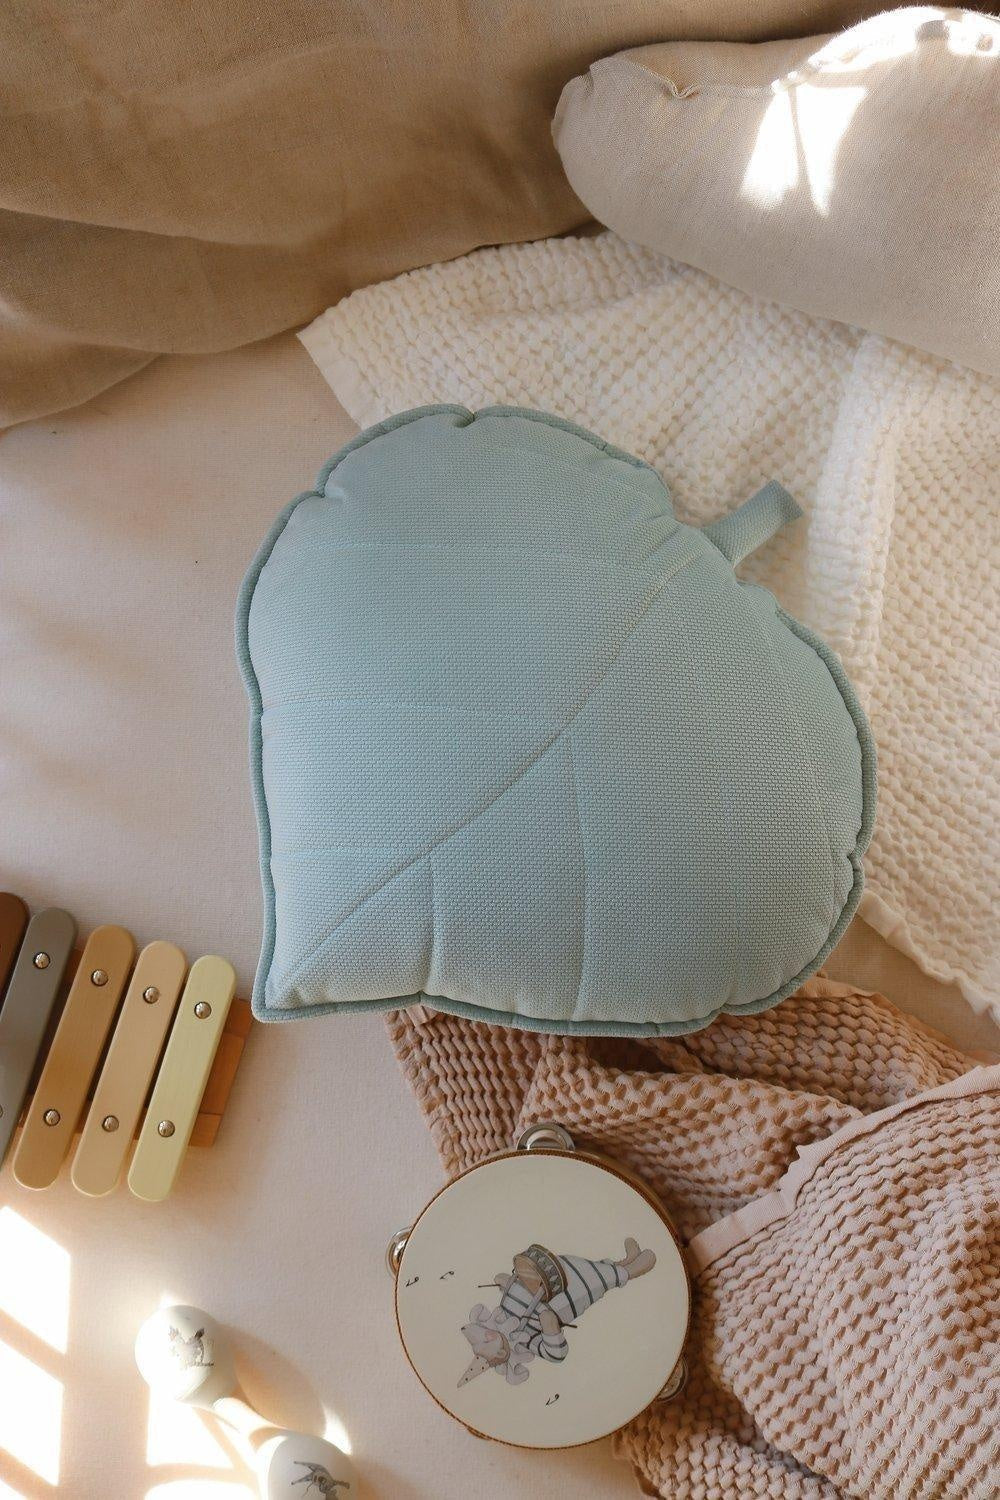 Leaf Pillow Velvet “Powder Mint” | Kids Room & Nursery Decor